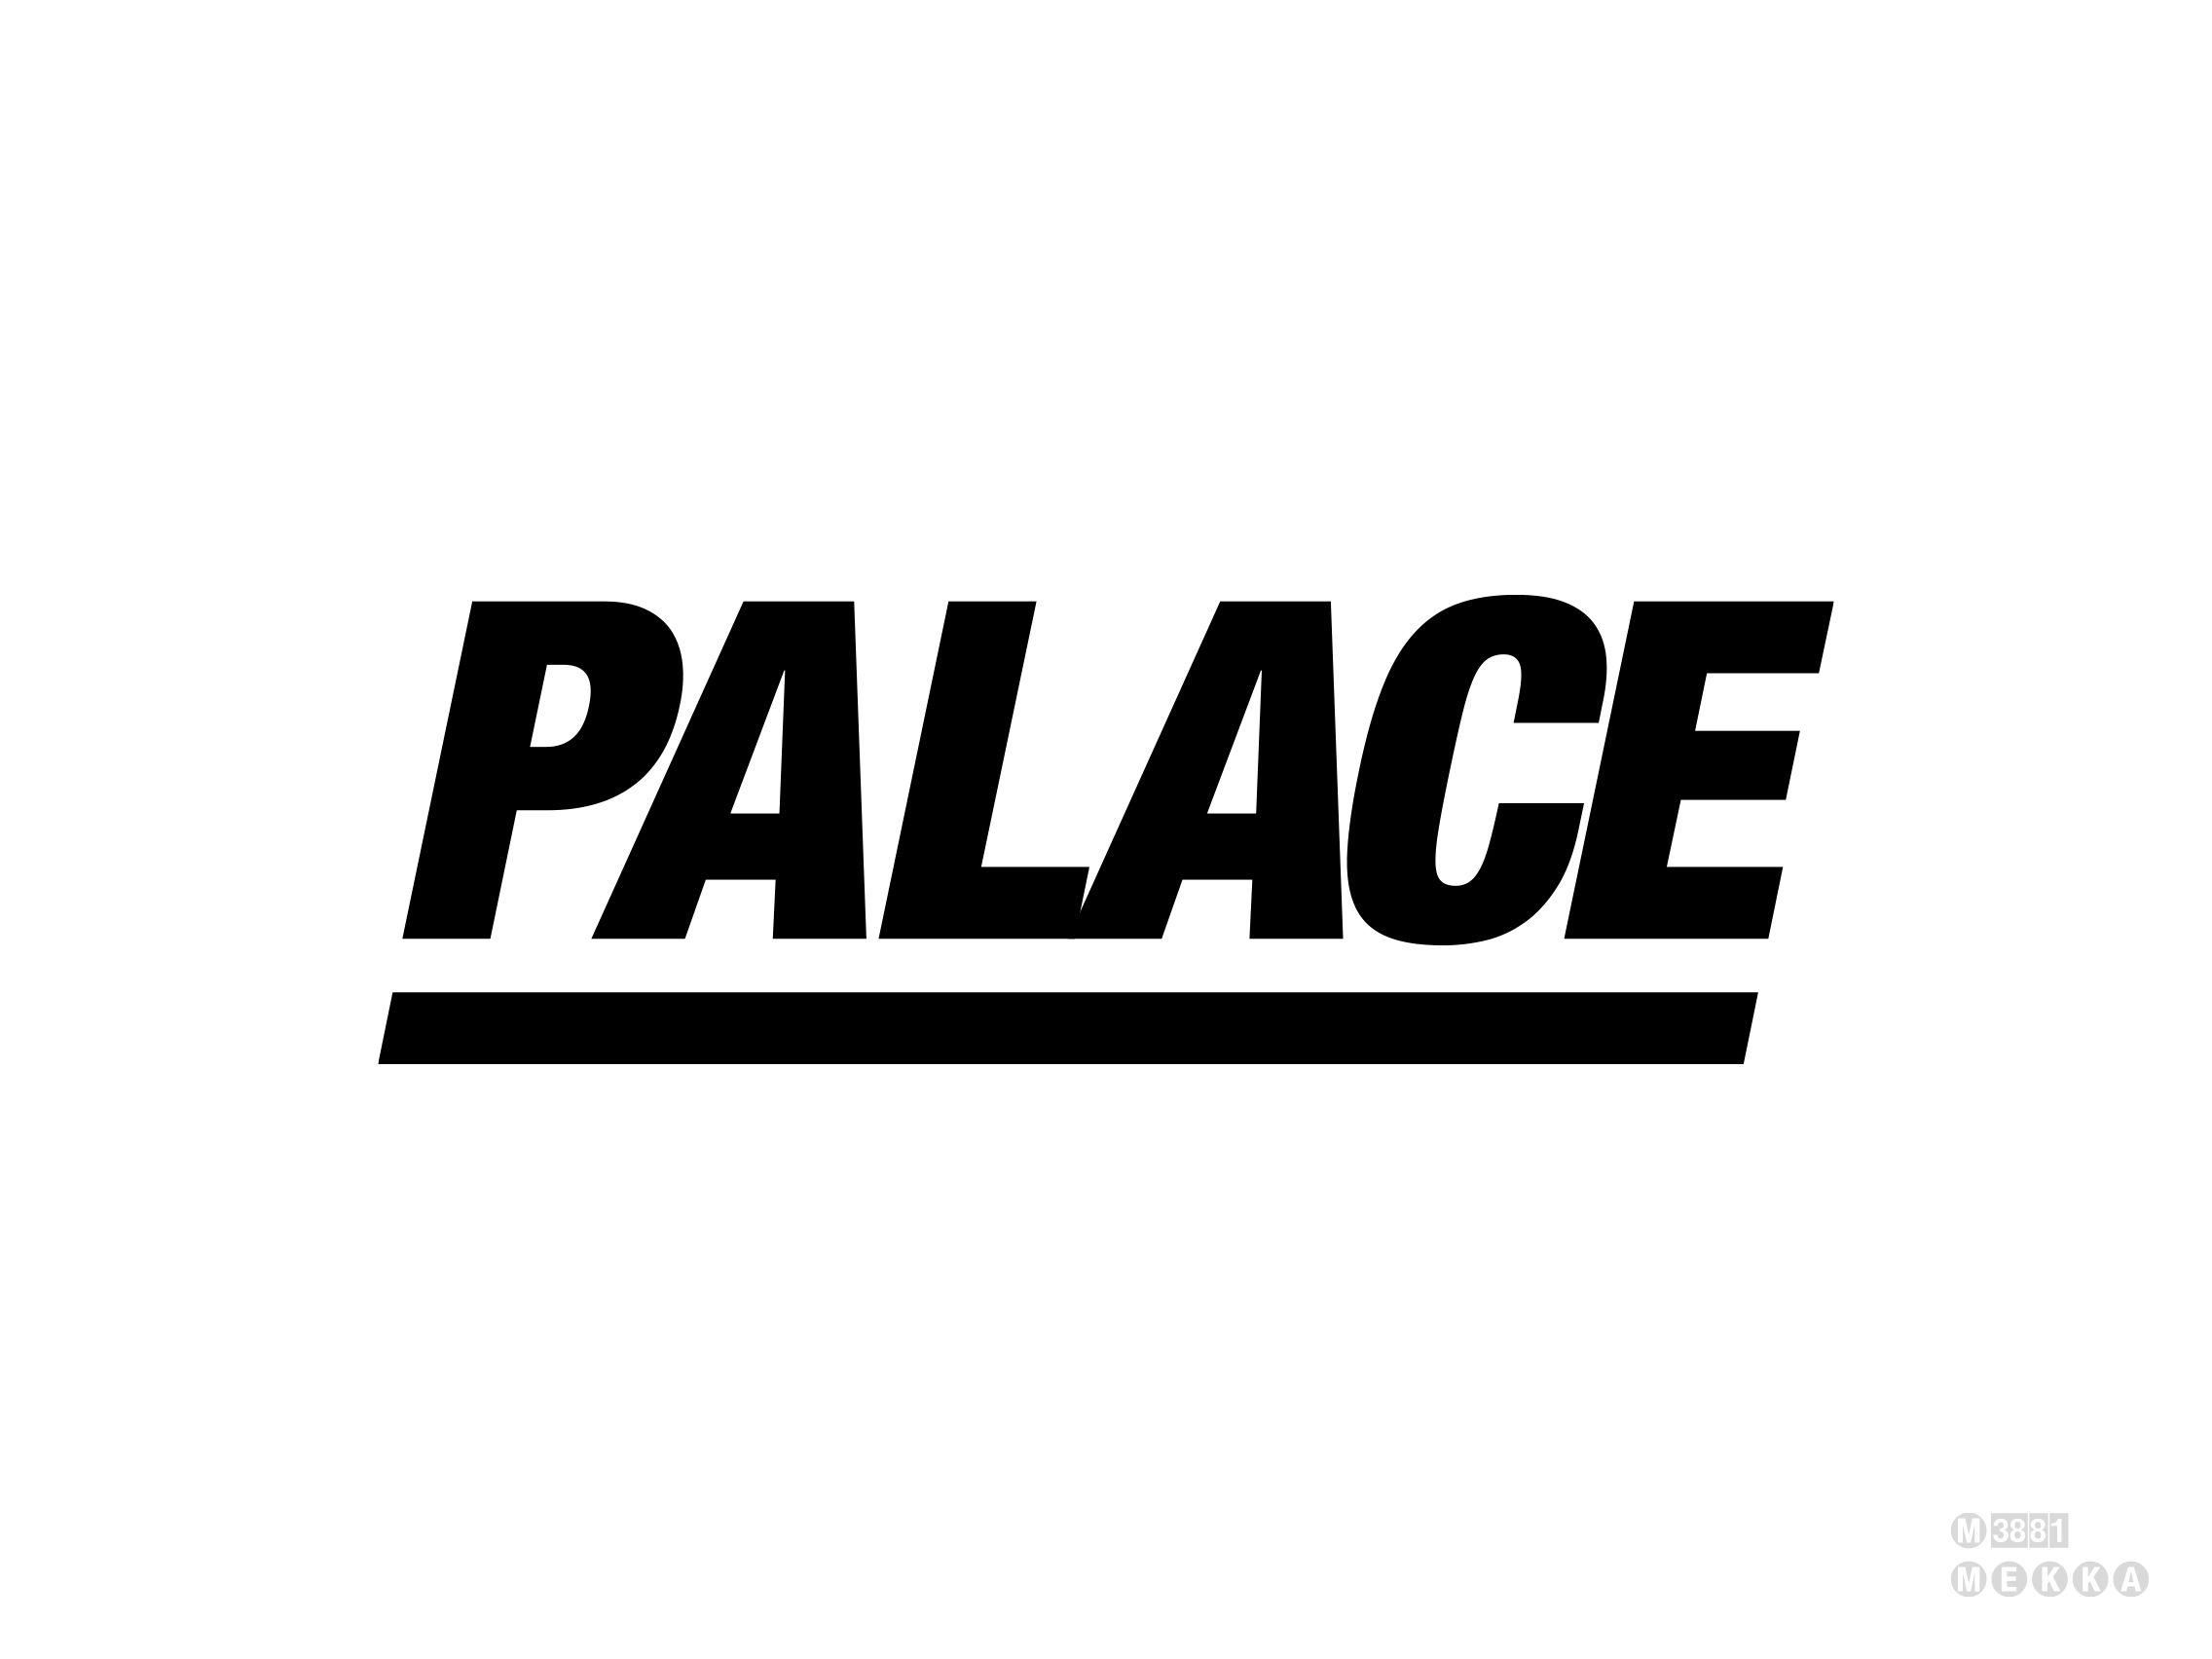 Font Palace Logo - Palace Skateboards [D]